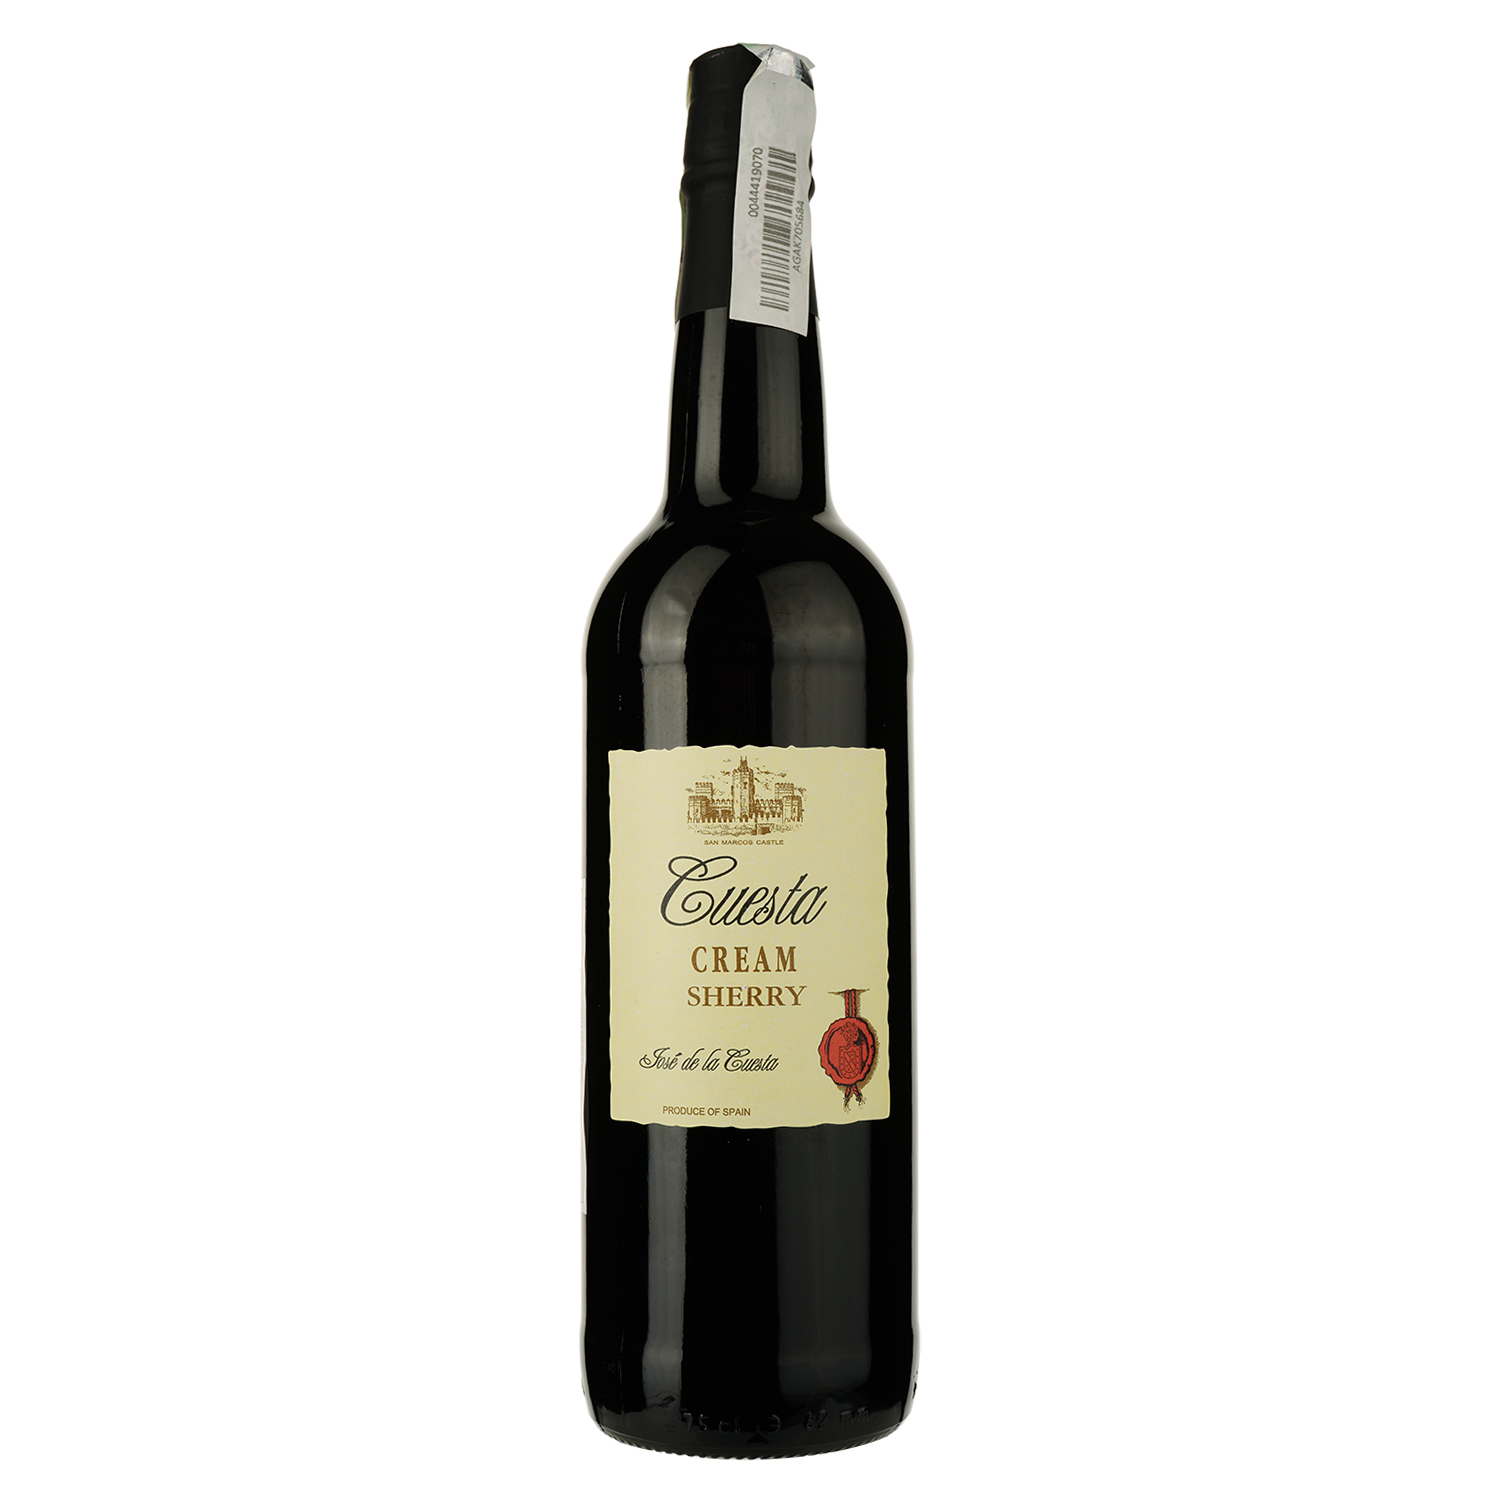 Вино Luis Caballero Cuesta Cream Sherry, белое, сладкое, 0,75 л - фото 1